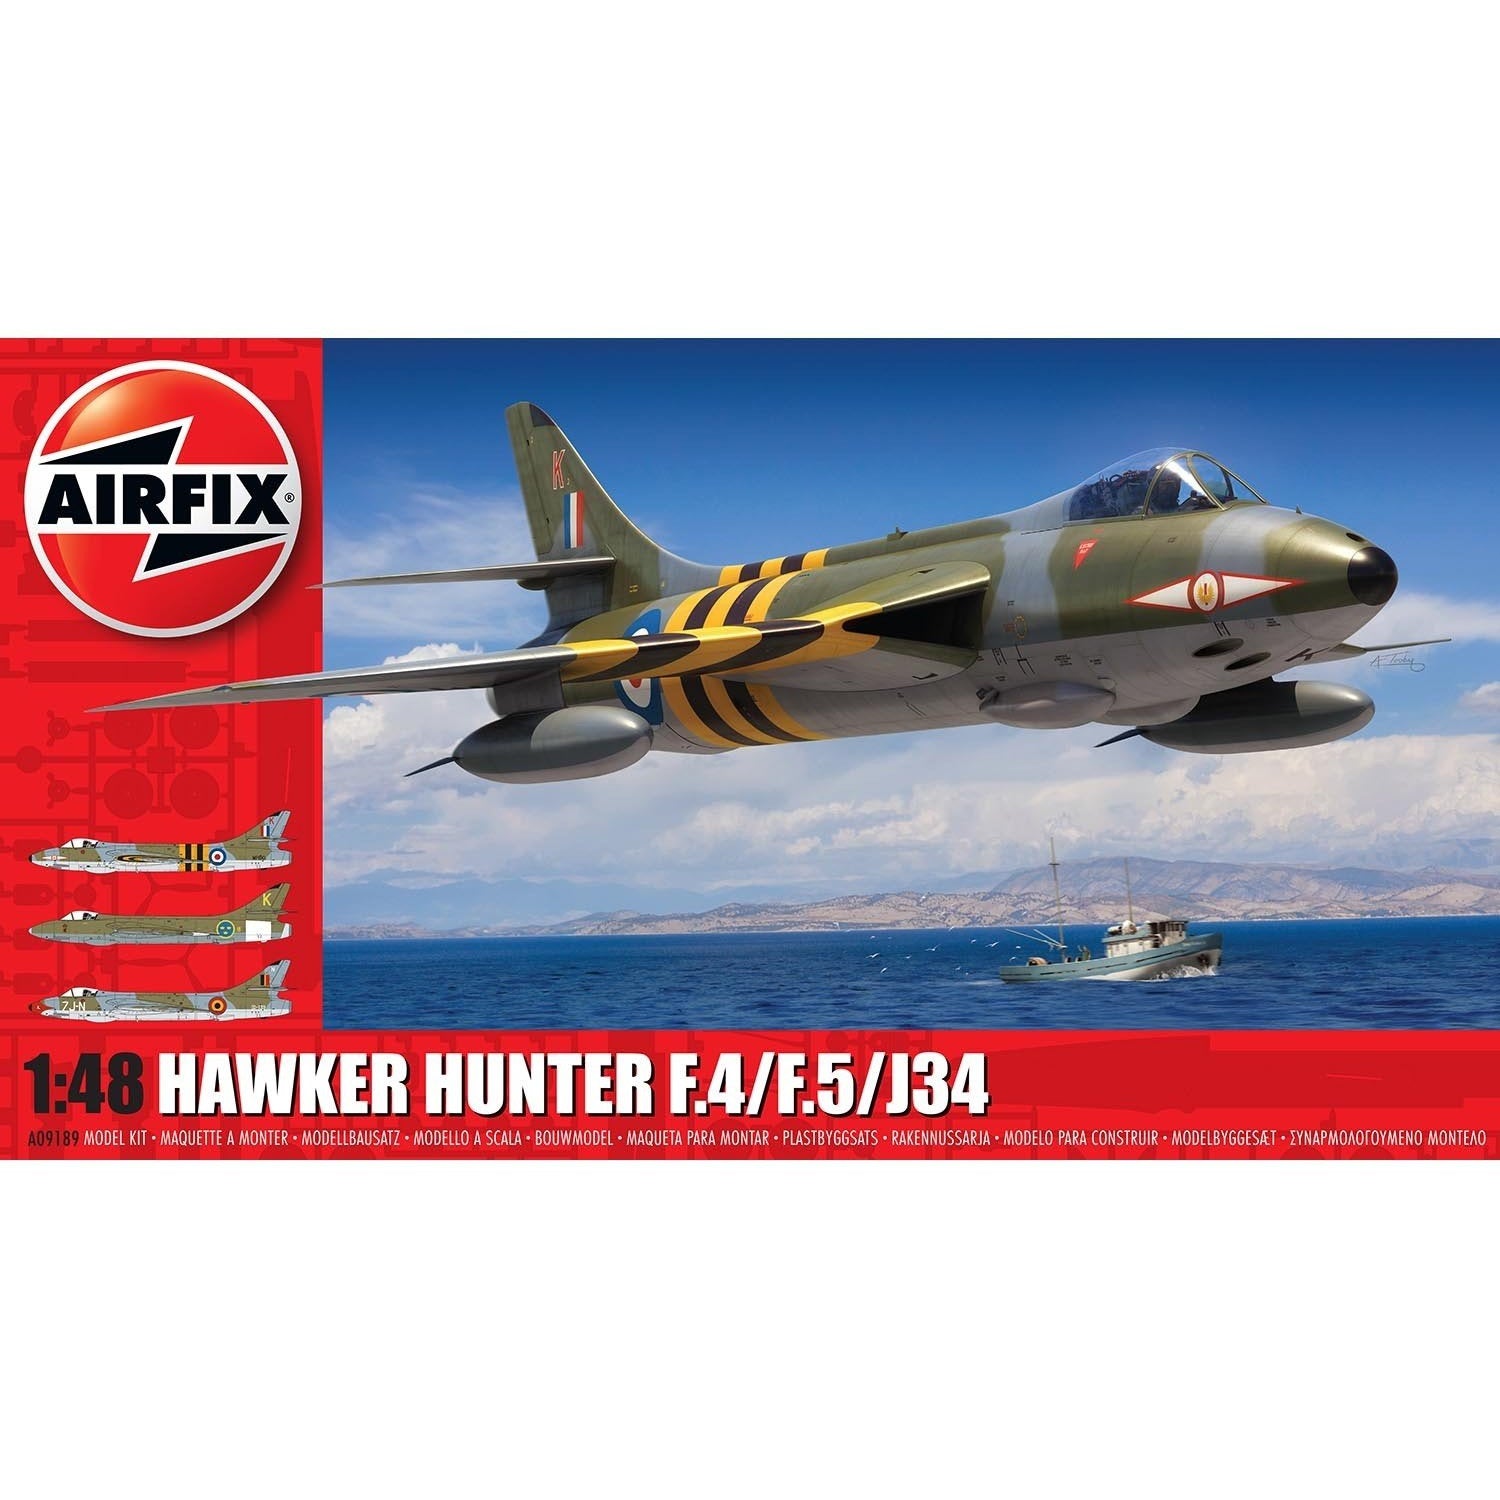 Hawker Hunter F4 1/48 by Airfix